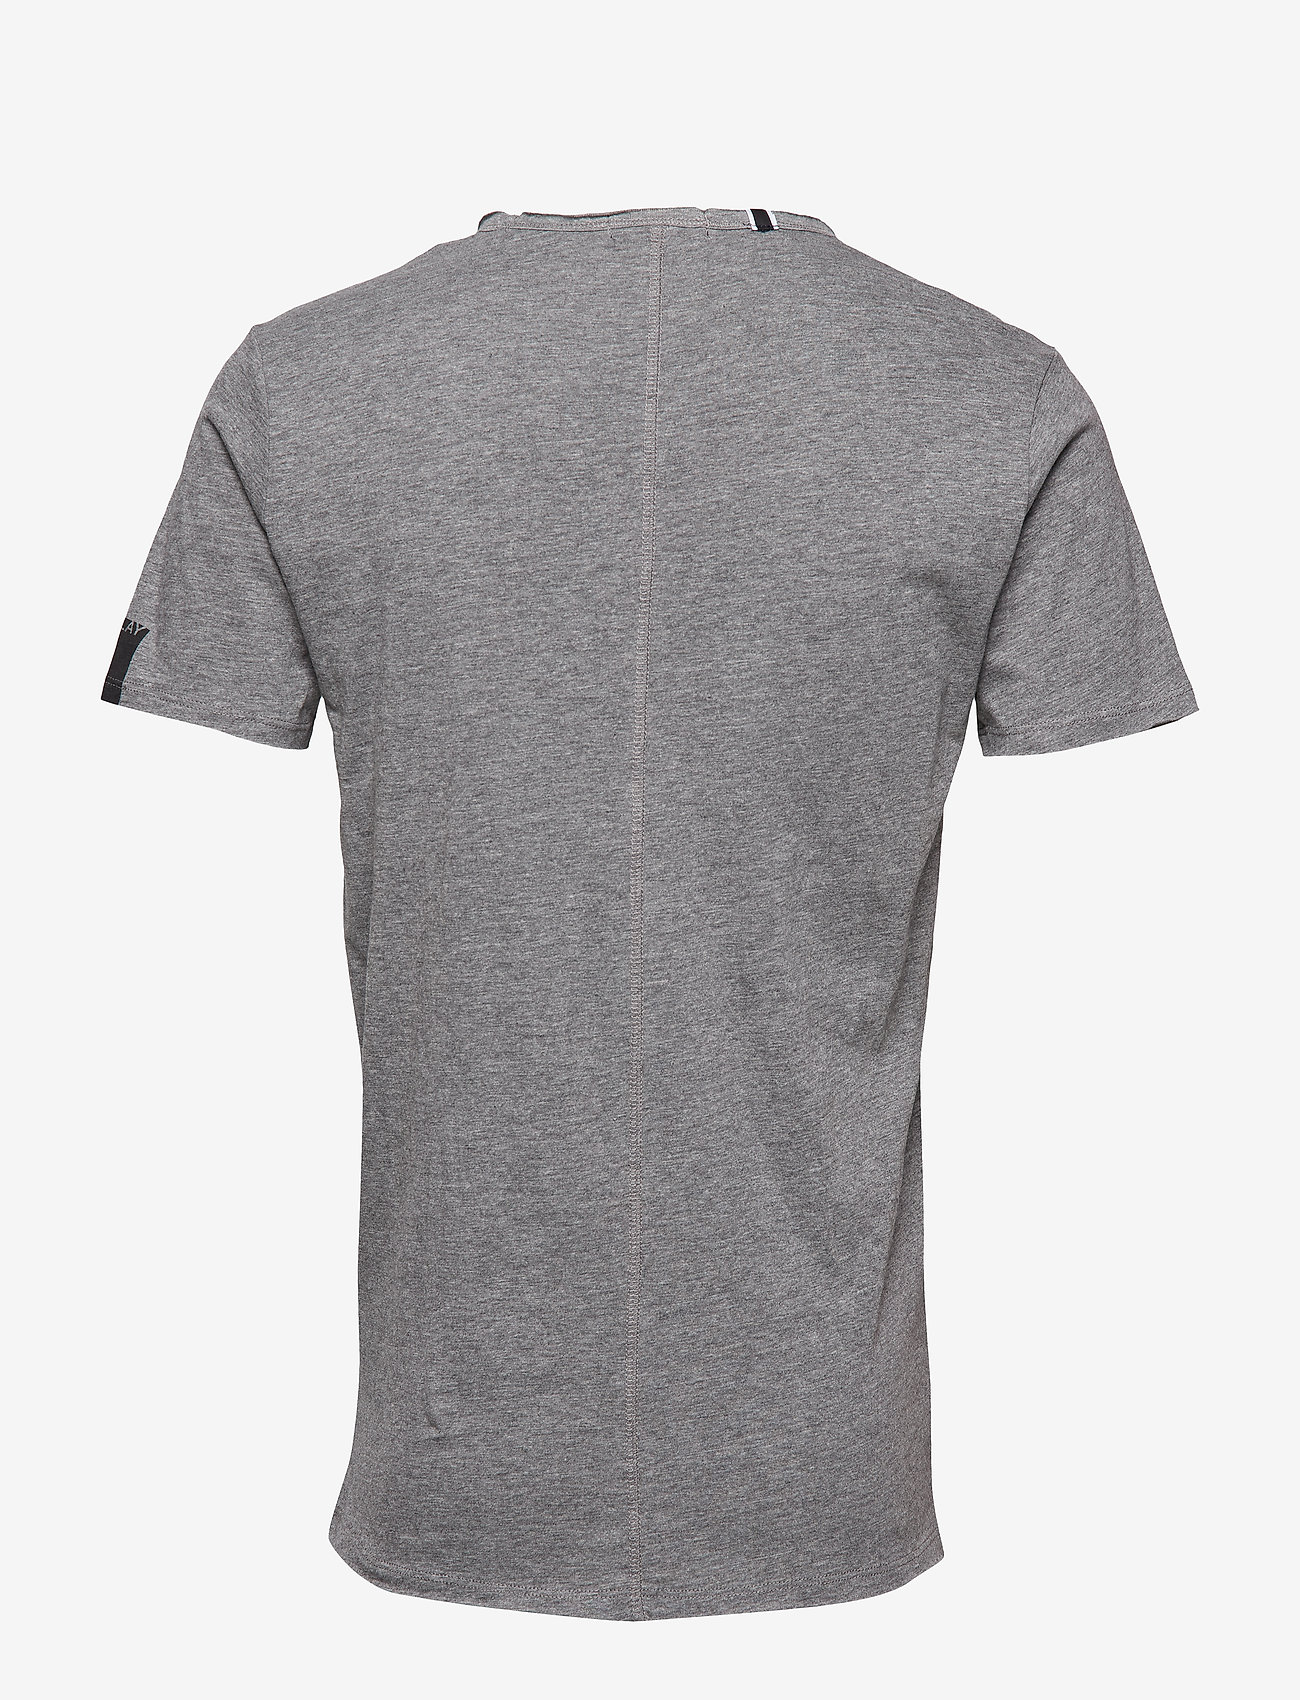 Replay - T-Shirt - mažiausios kainos - dark grey melange - 1